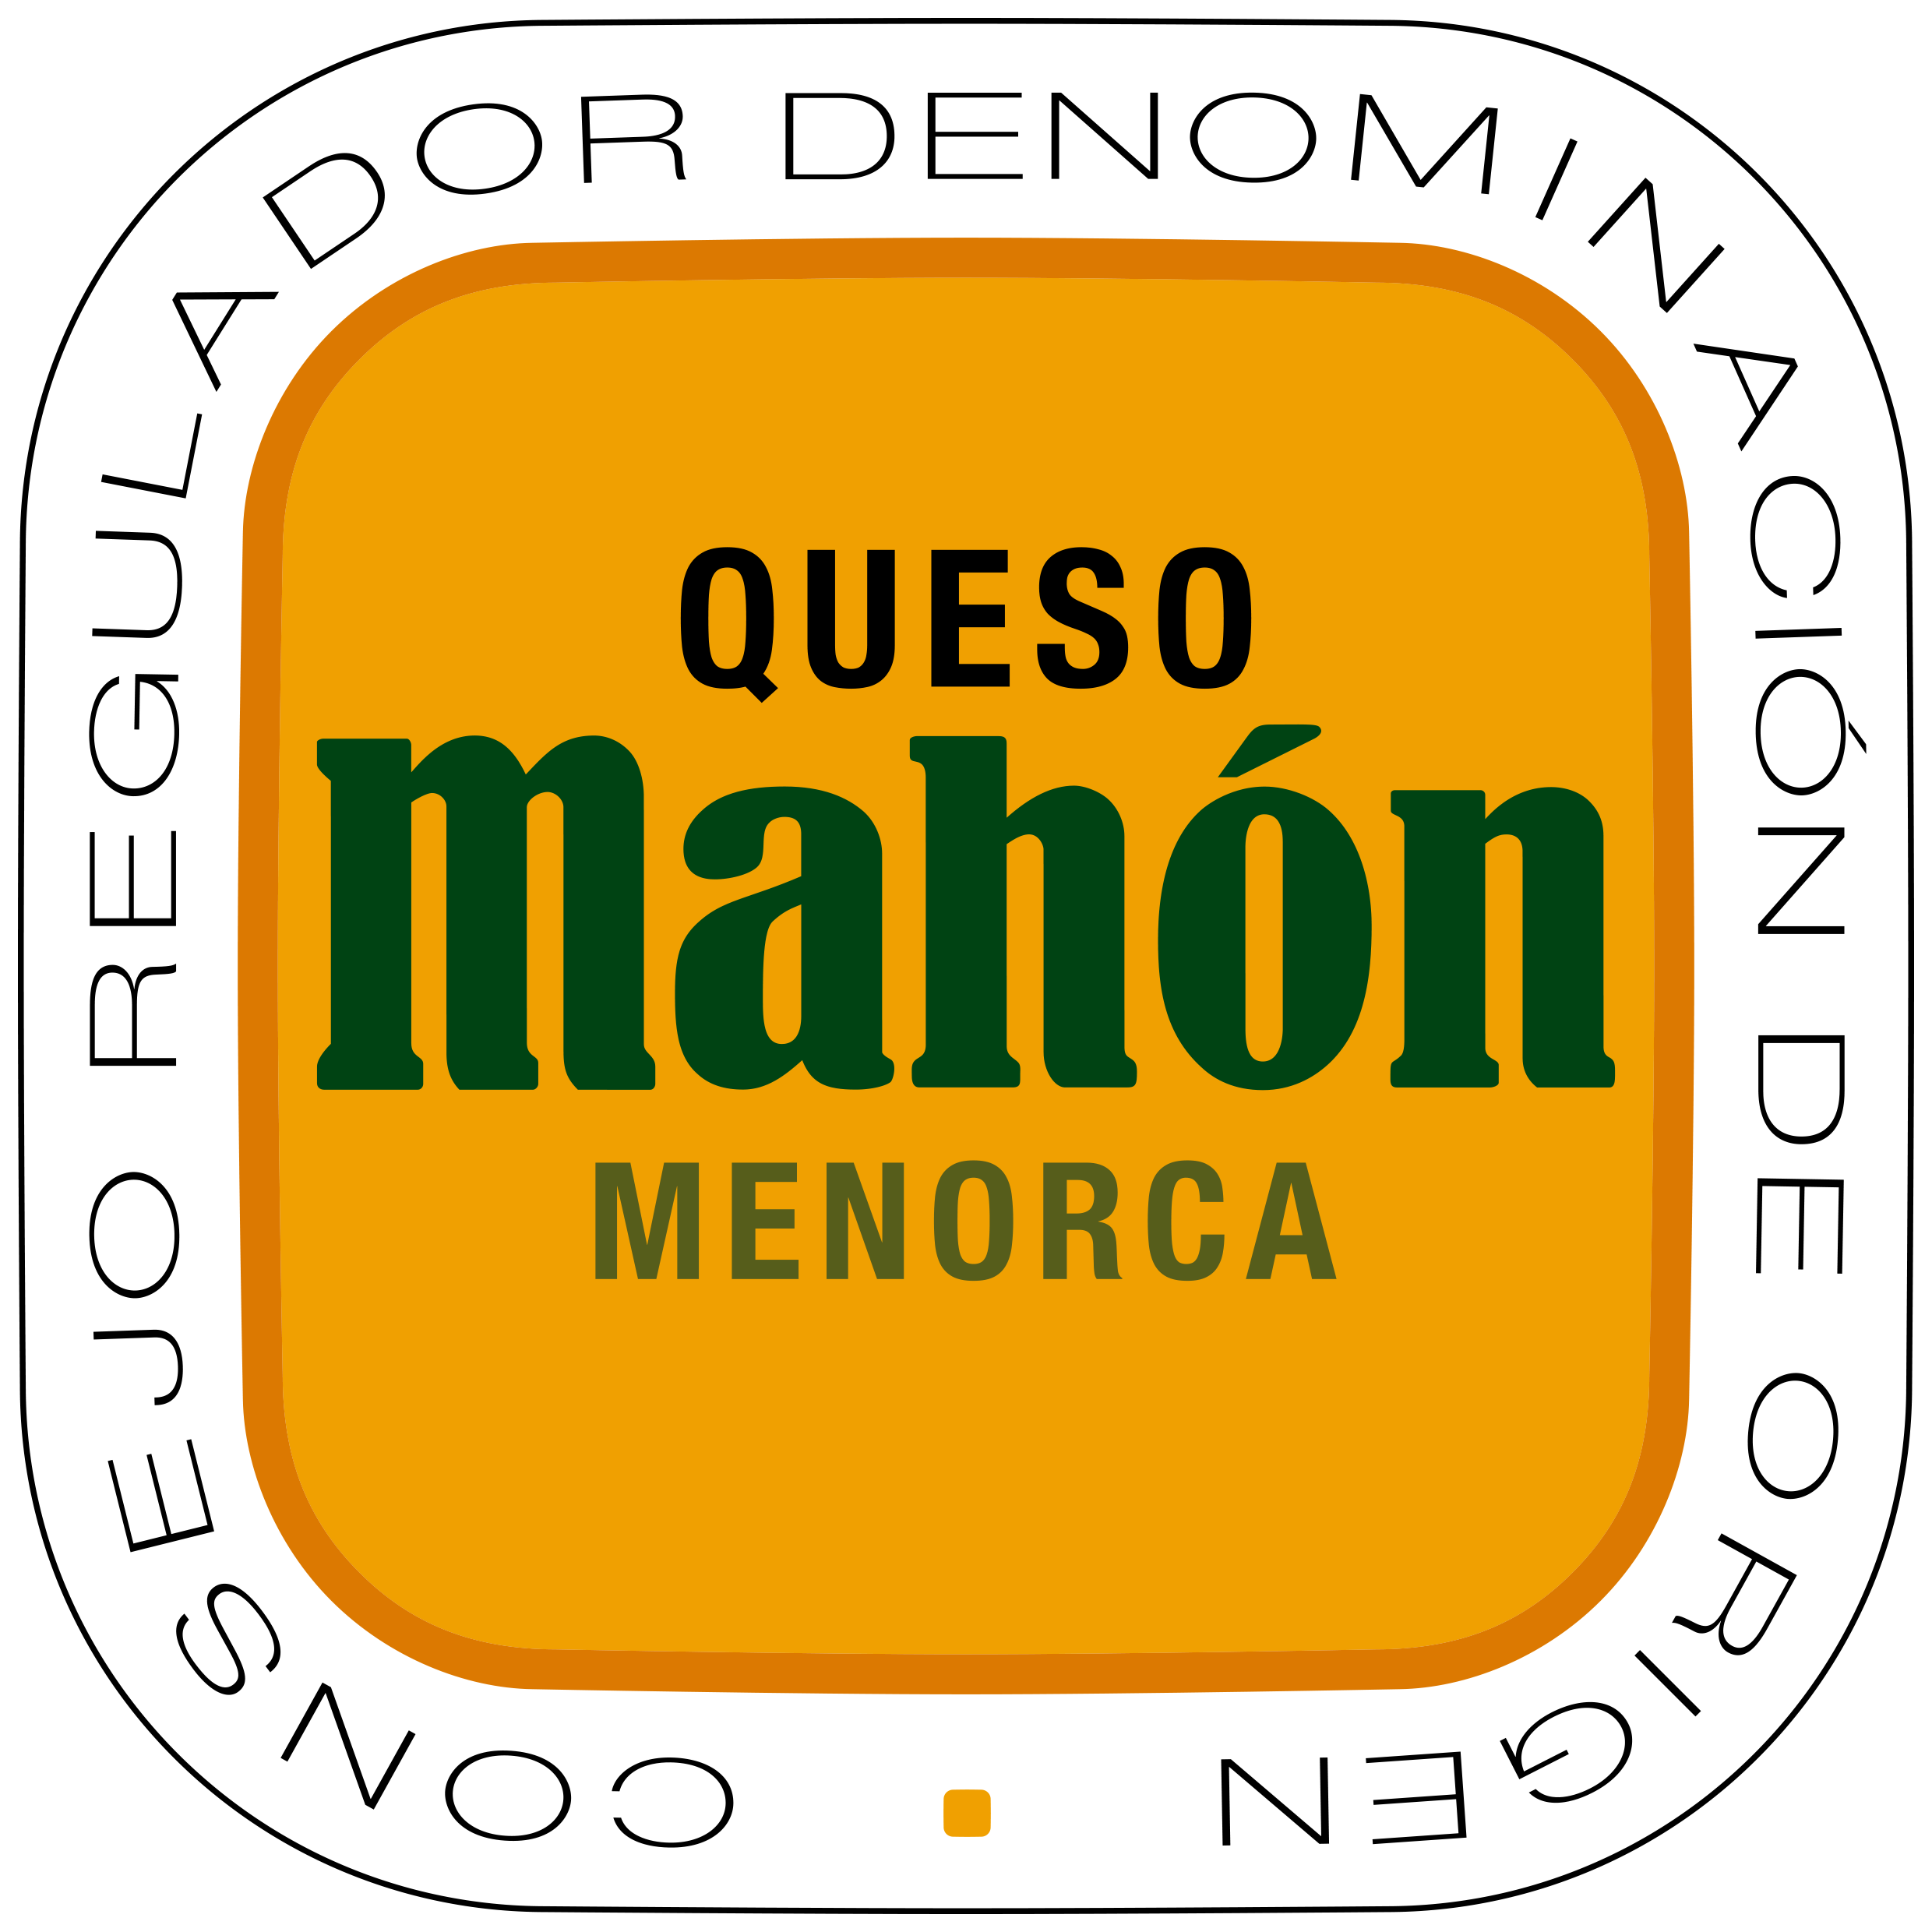 El 44% de las personas de Mallorca conocen la DOP queso “Mahón-Menorca” - Noticias - Islas Baleares - Productos agroalimentarios, denominaciones de origen y gastronomía balear